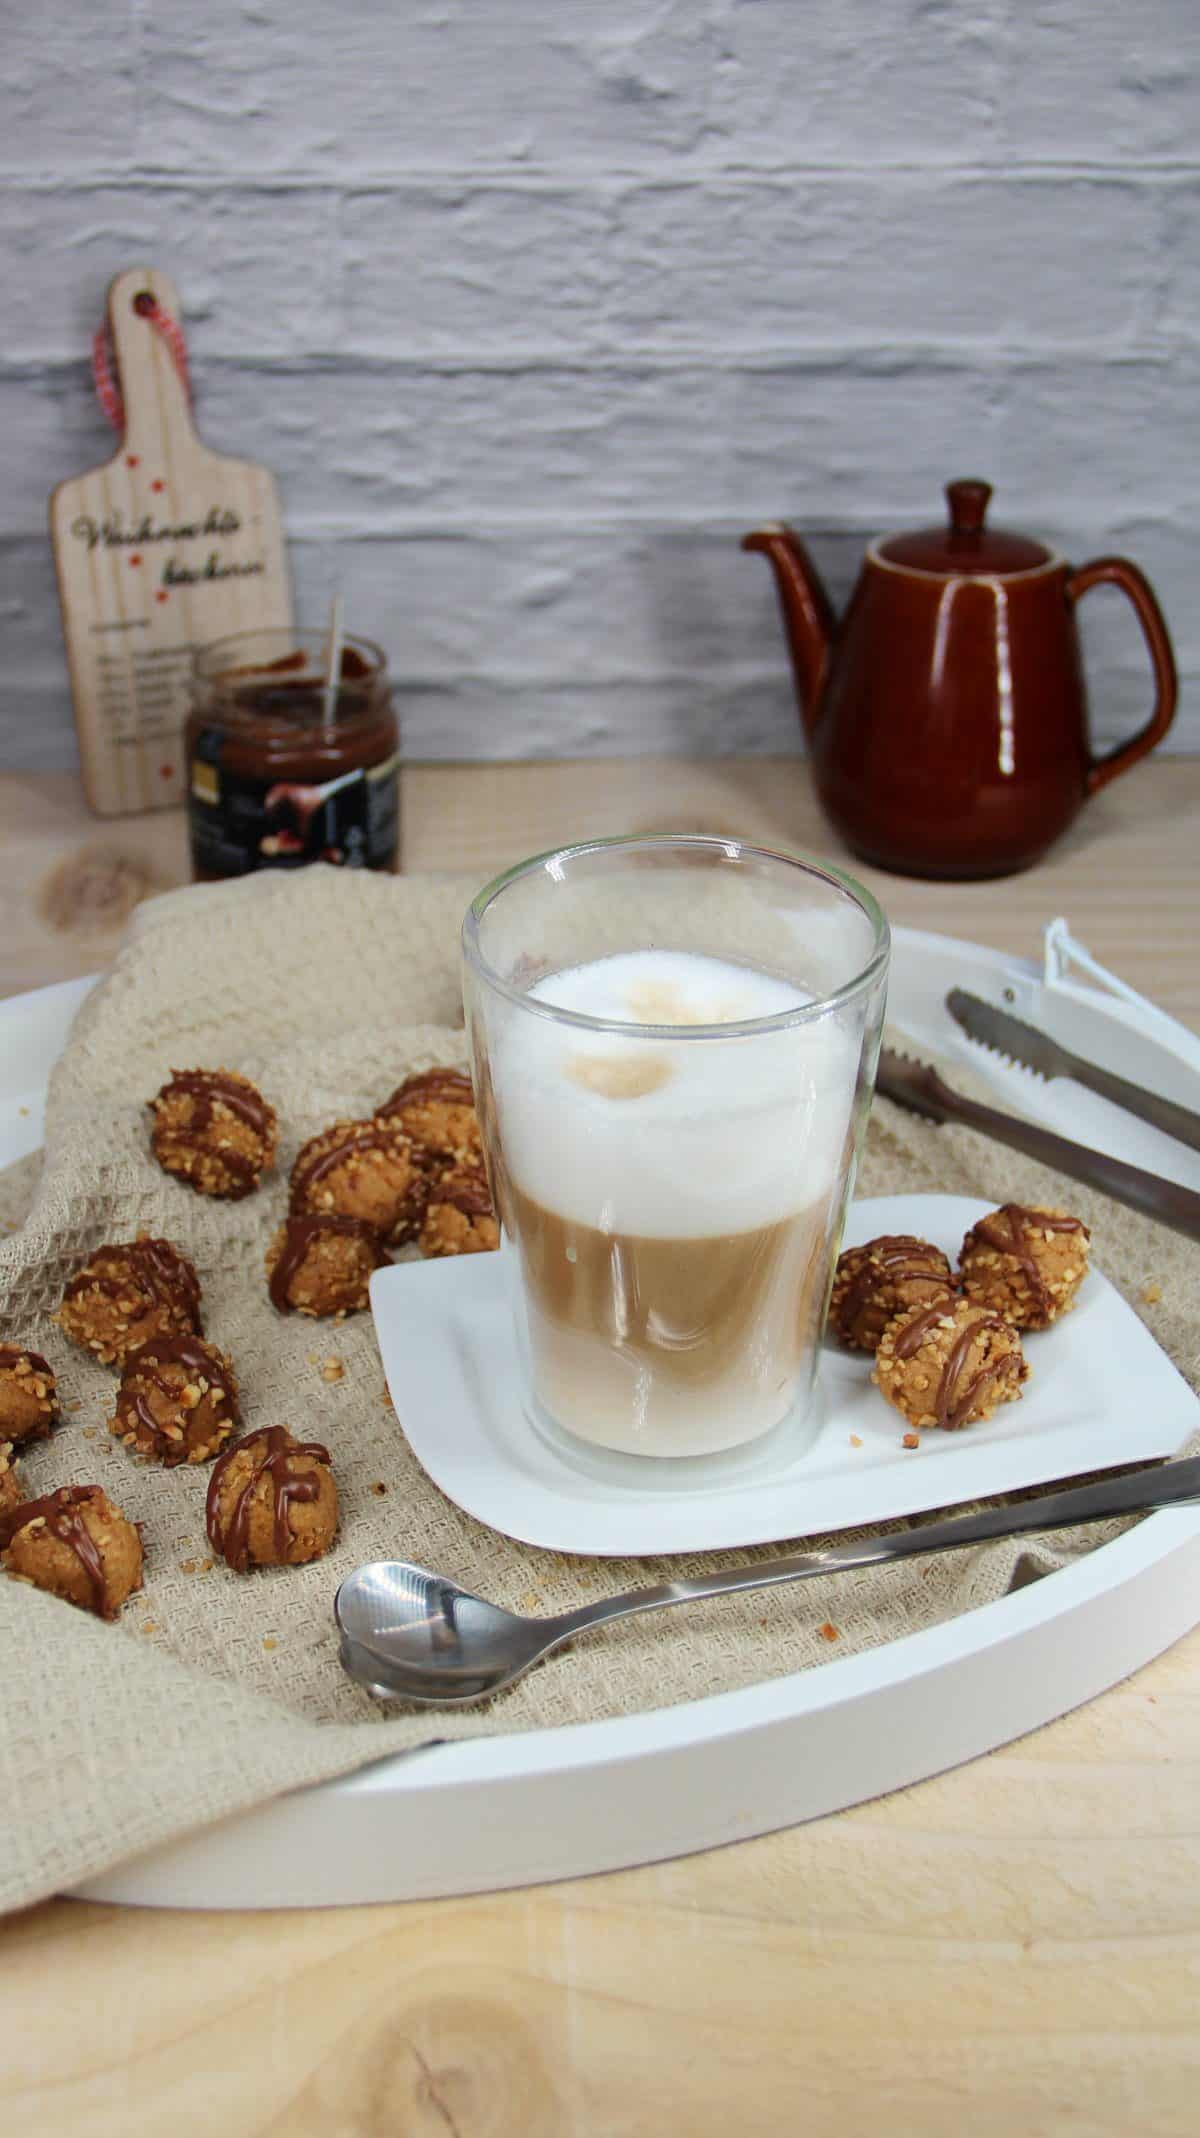 Haselnusskugeln mit einer Kaffeetasse auf einem weißen Tablett